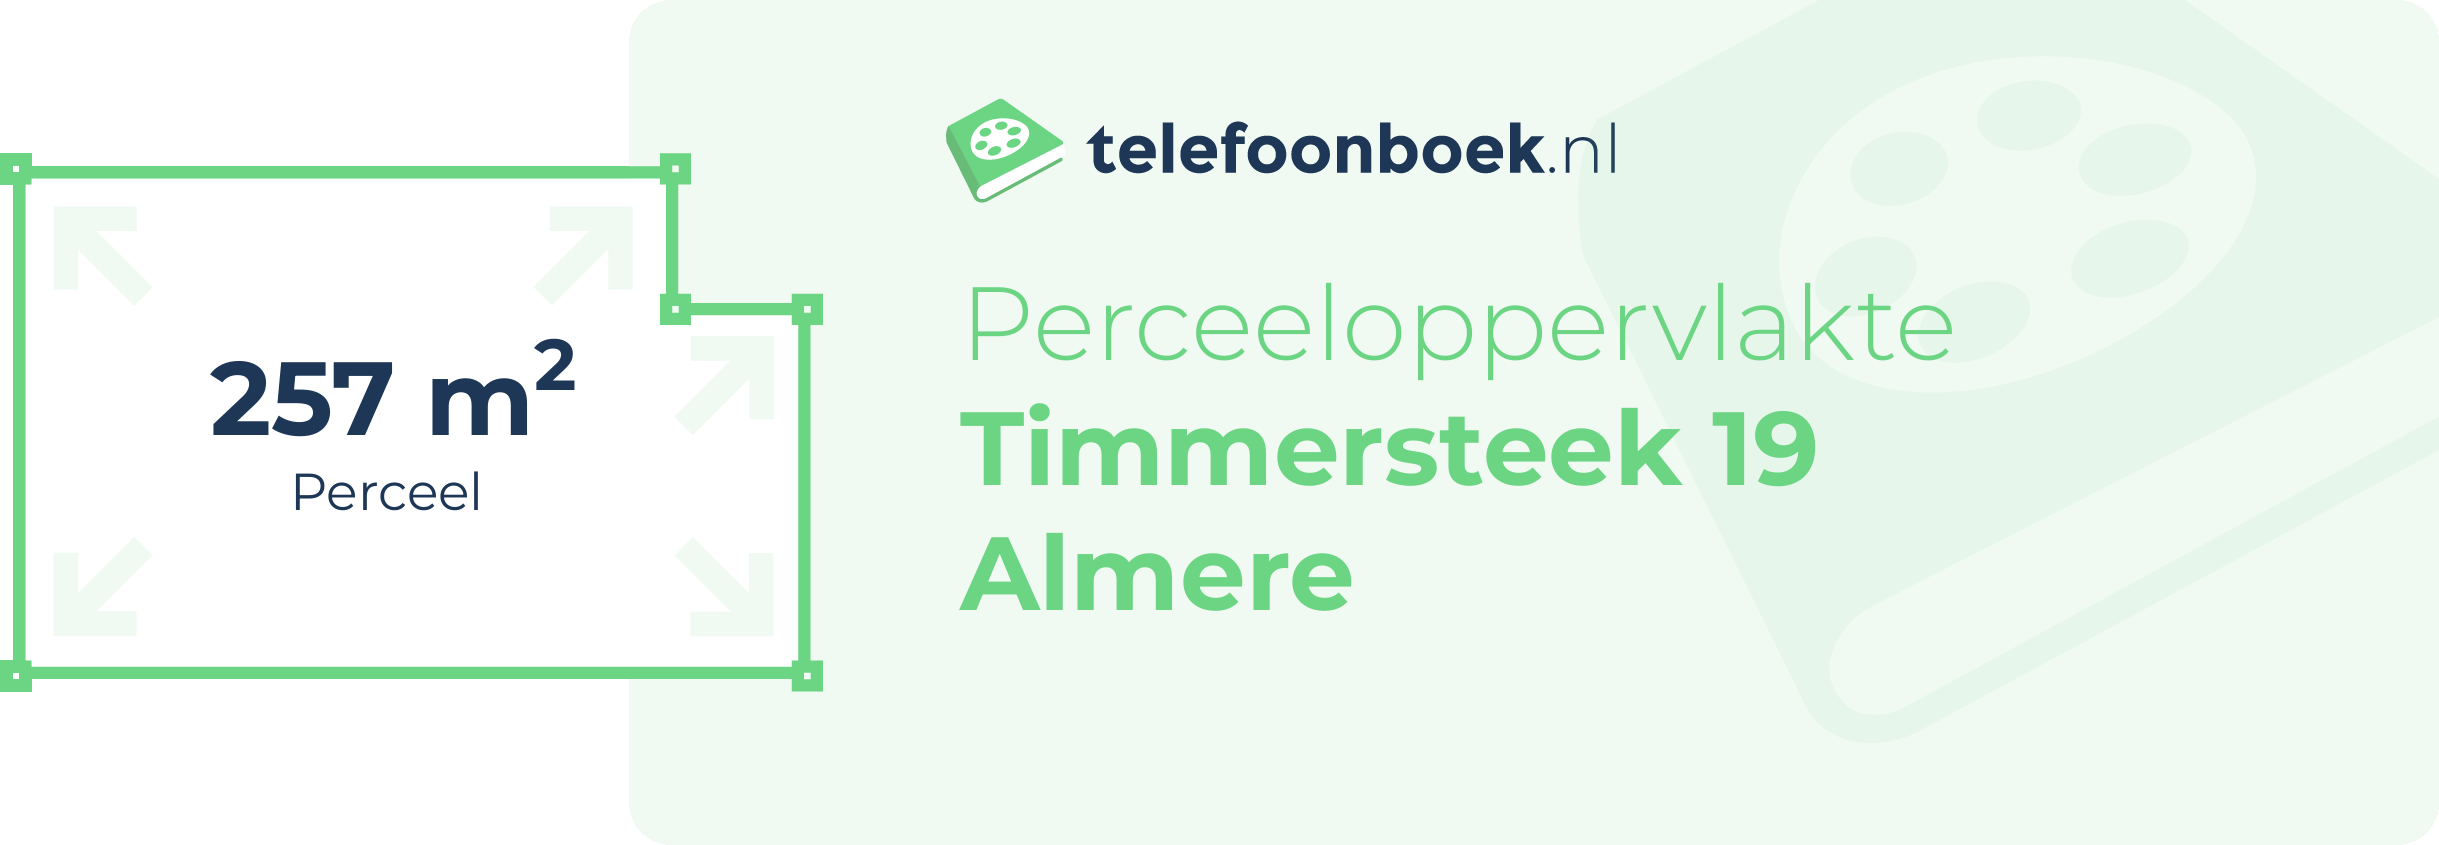 Perceeloppervlakte Timmersteek 19 Almere